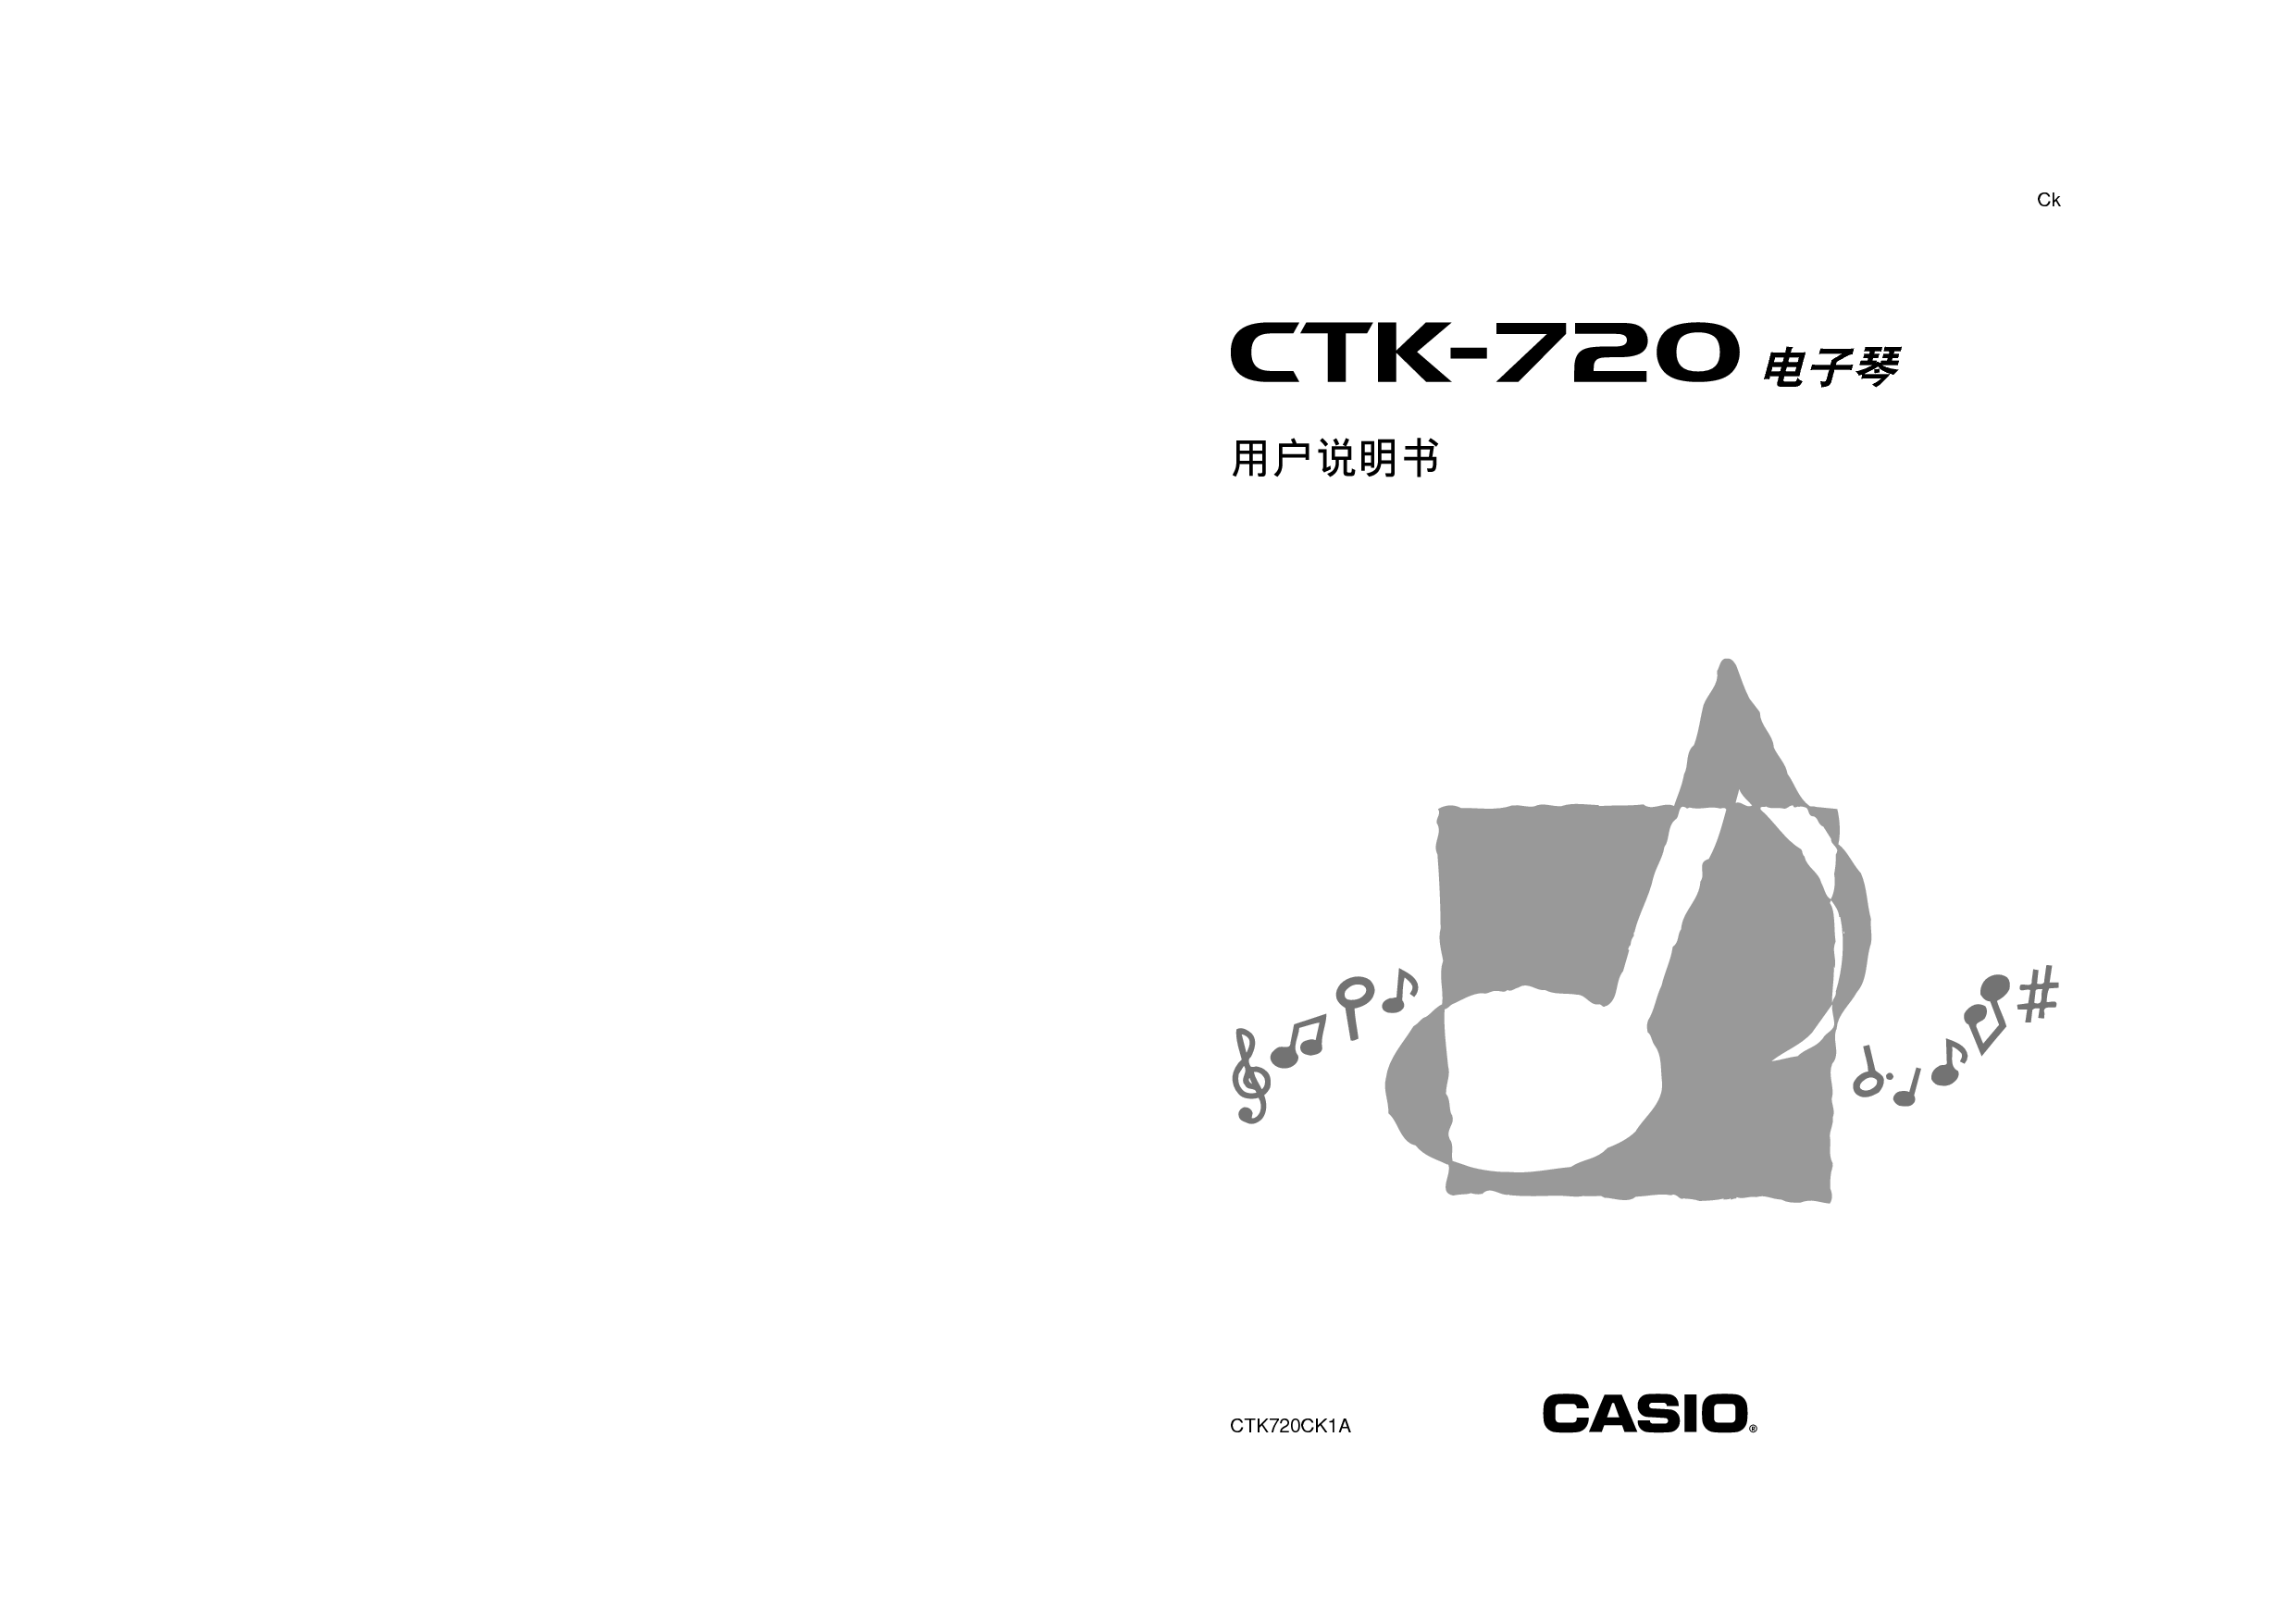 卡西欧 Casio CTK-720 使用说明书 封面